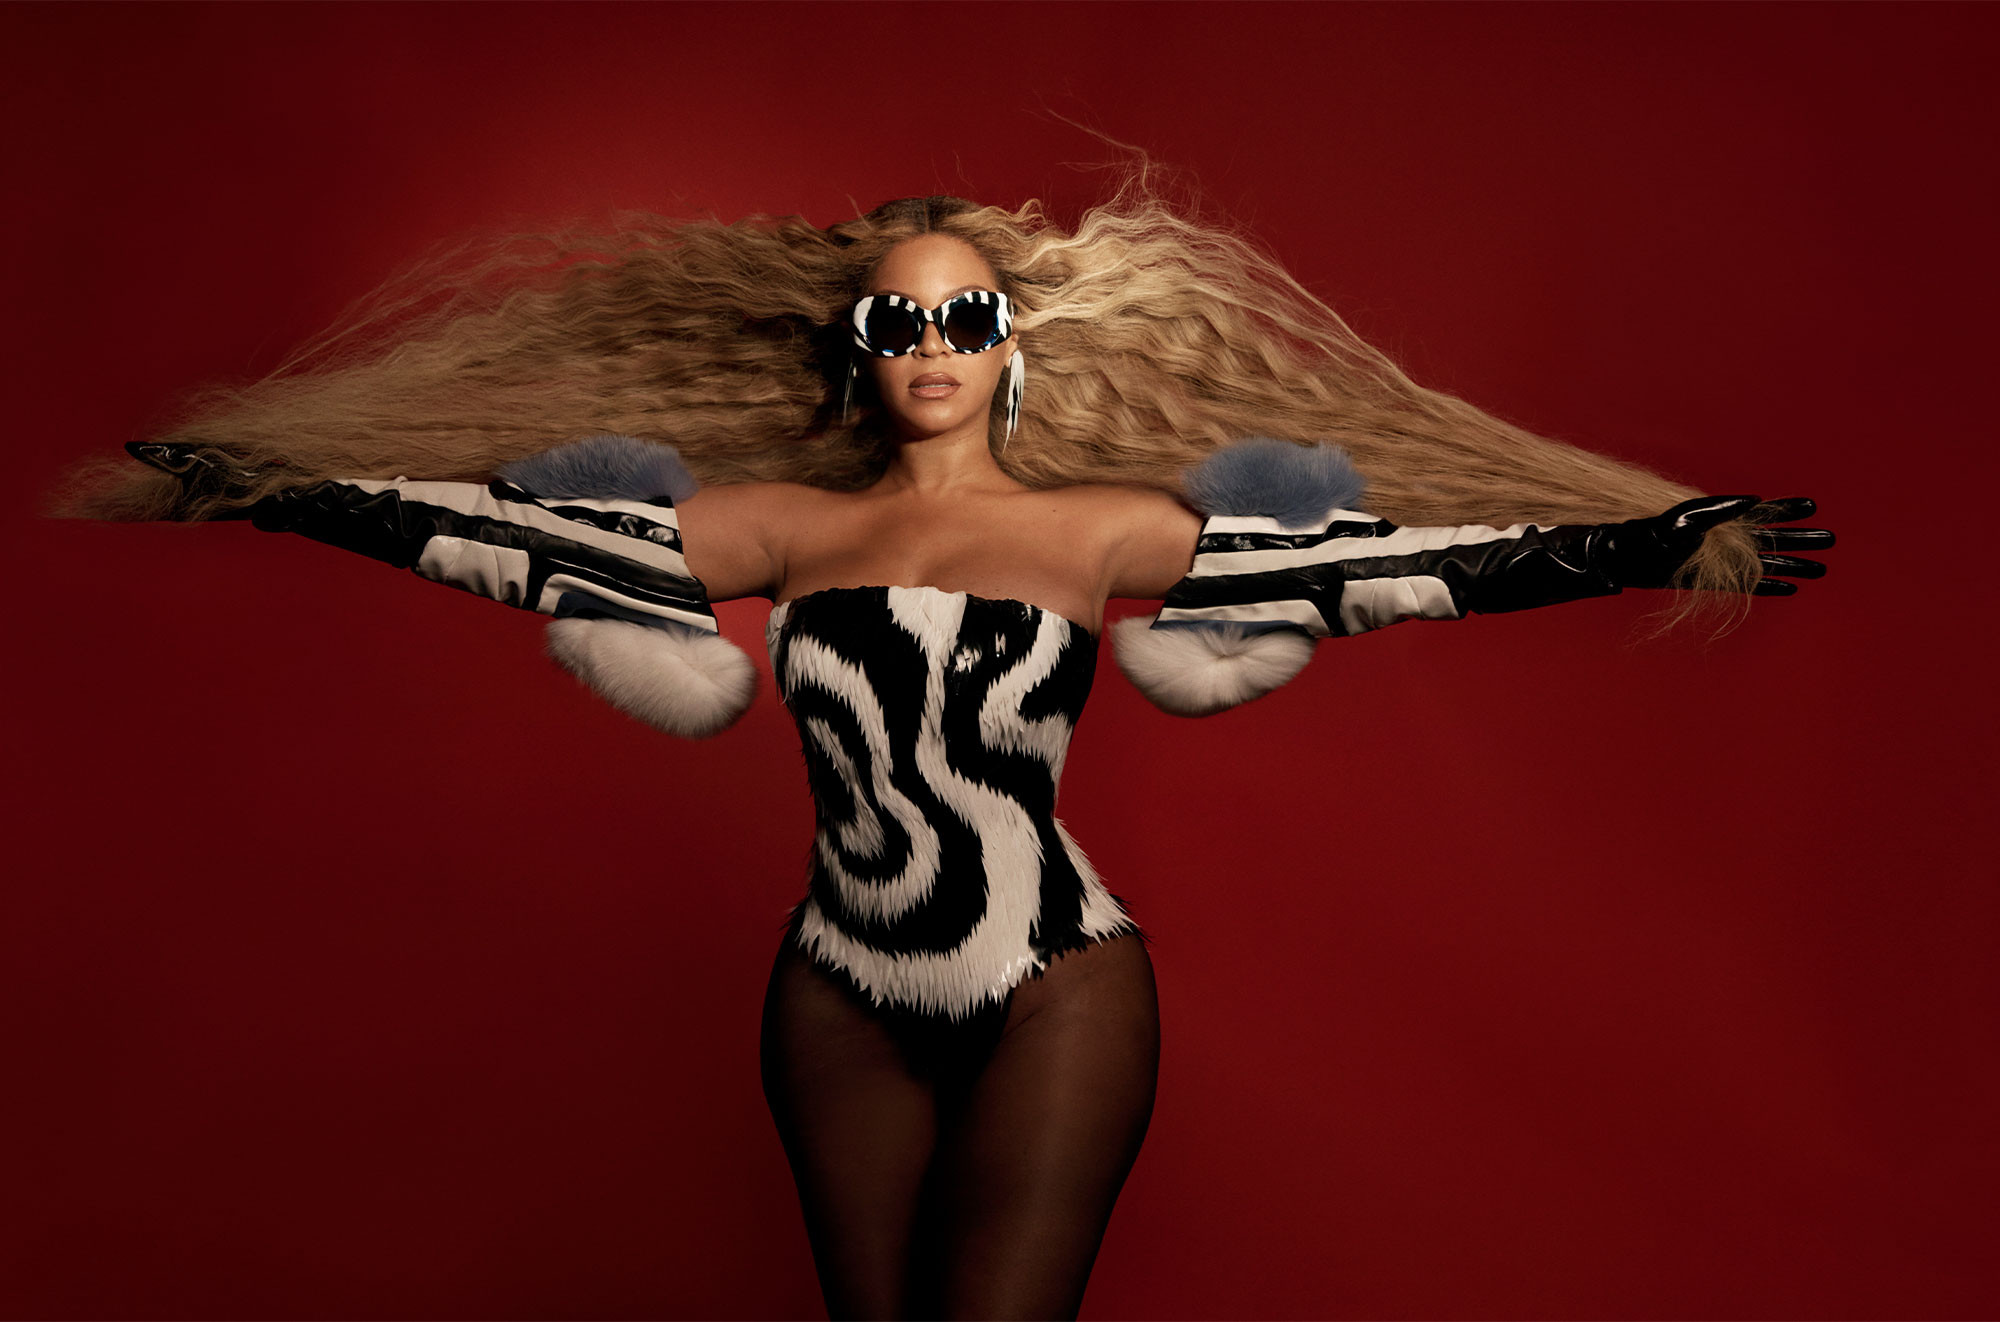 Čtyři minuty temnoty: Beyoncé na křišťálovém koni dokazuje, že je v popové hudbě stále královnou